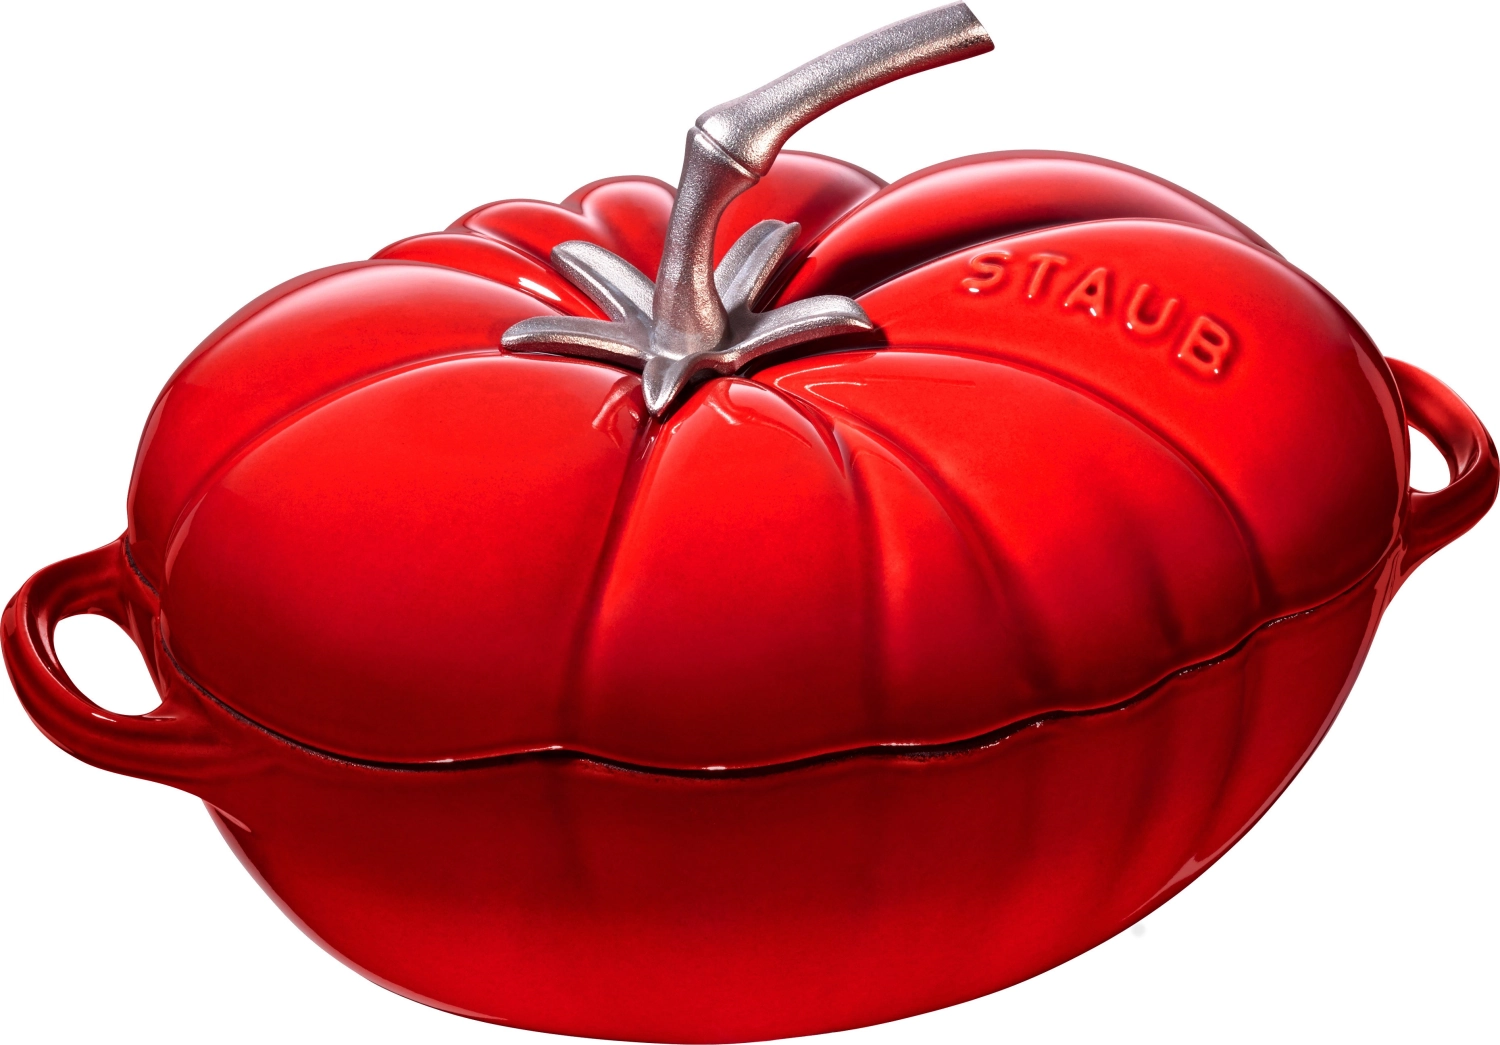 Cocotte 25 cm, tomate, rouge cerise, fonte 2.9l